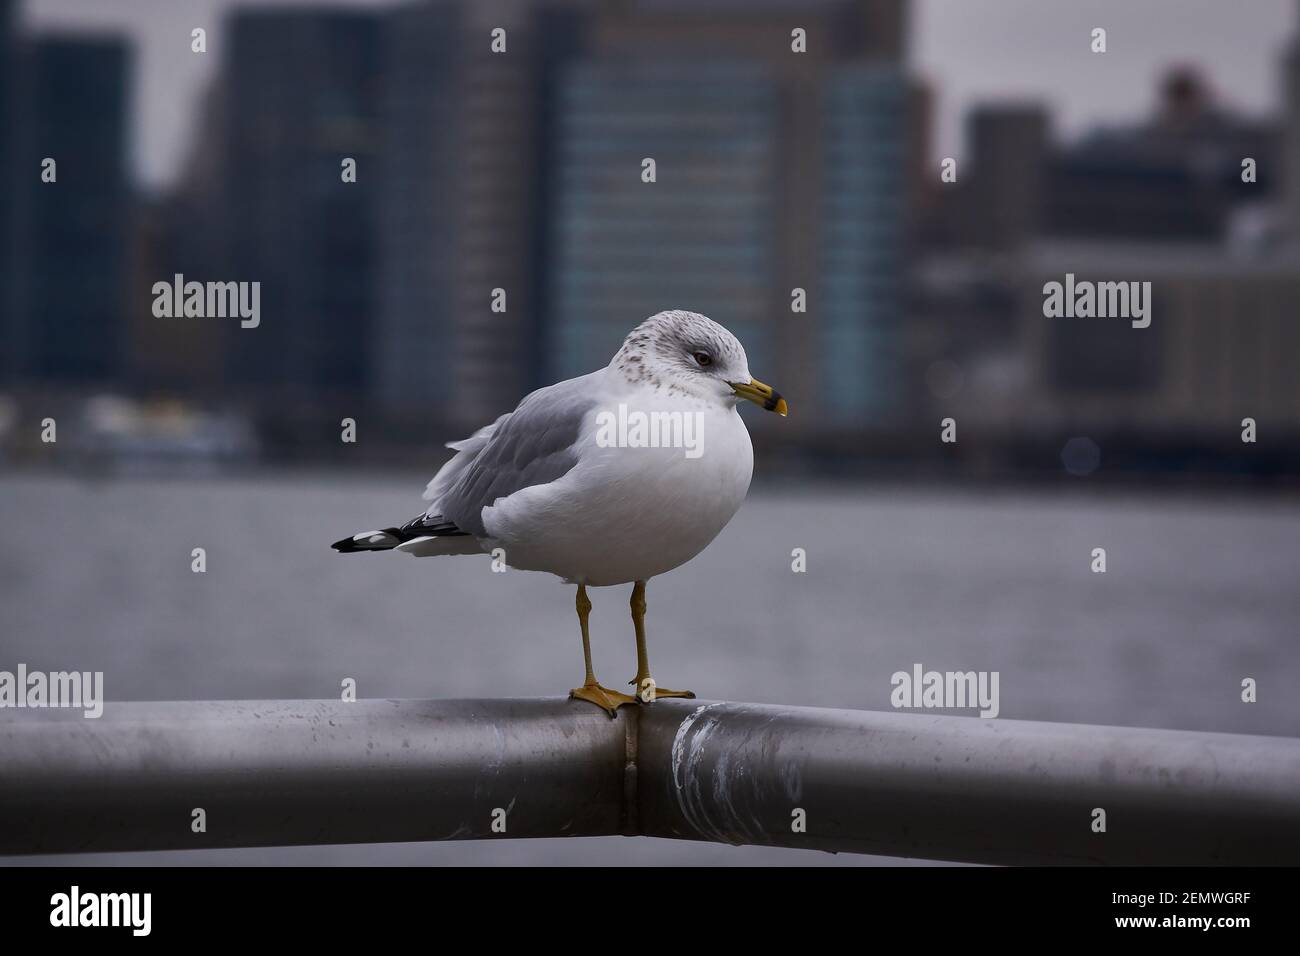 Mouette avec vue sur Manhattan en arrière-plan, New York City. Concentrez-vous sur l'oiseau. Banque D'Images